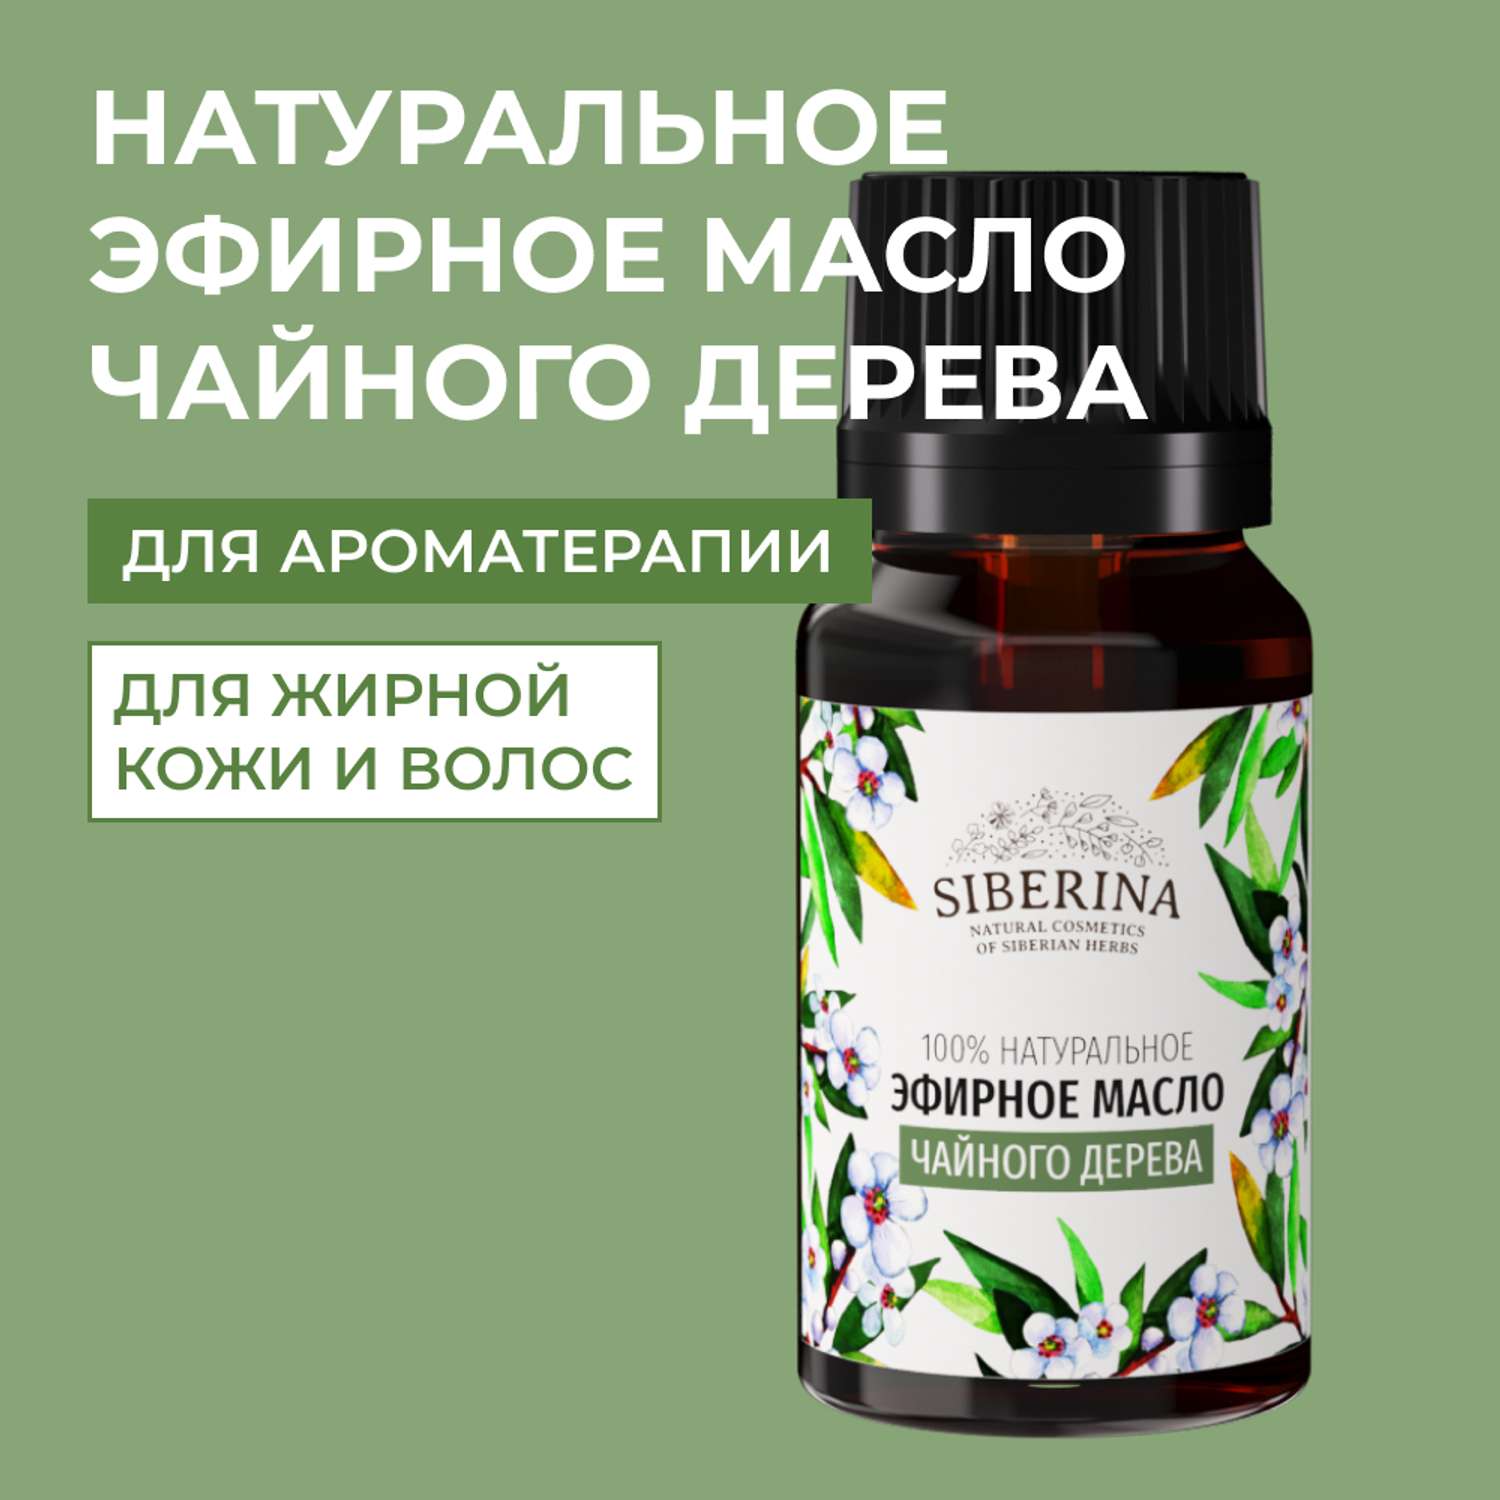 Эфирное масло Siberina натуральное «Чайного дерева» с антибактериальным и антисептическим действием 8 мл - фото 1